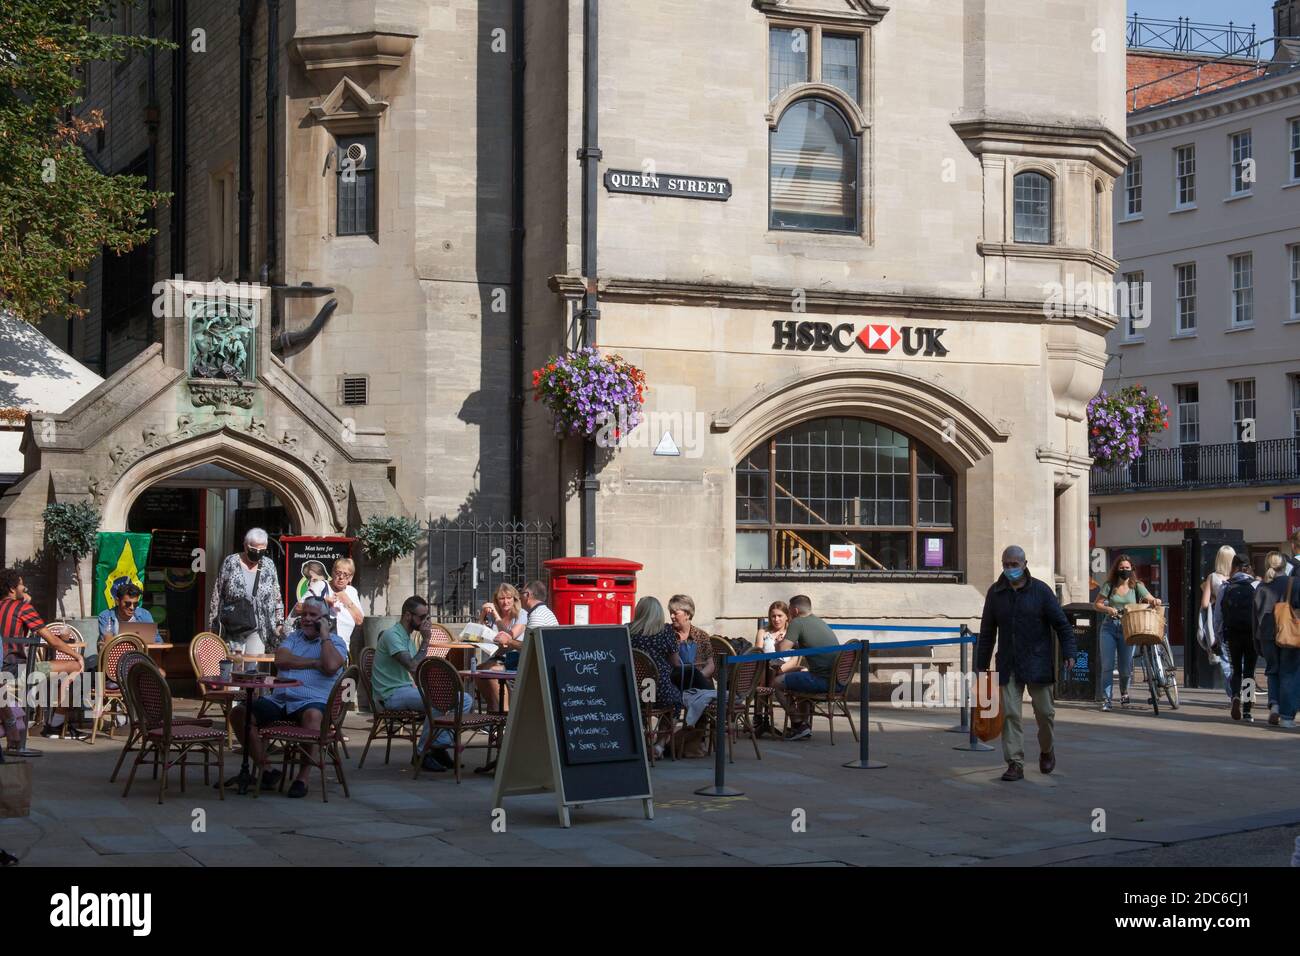 La HSBC Bank sur Carfax à Oxford avec des personnes mangeant dehors sur une terrasse au Royaume-Uni, prise le 15 septembre 2020 Banque D'Images